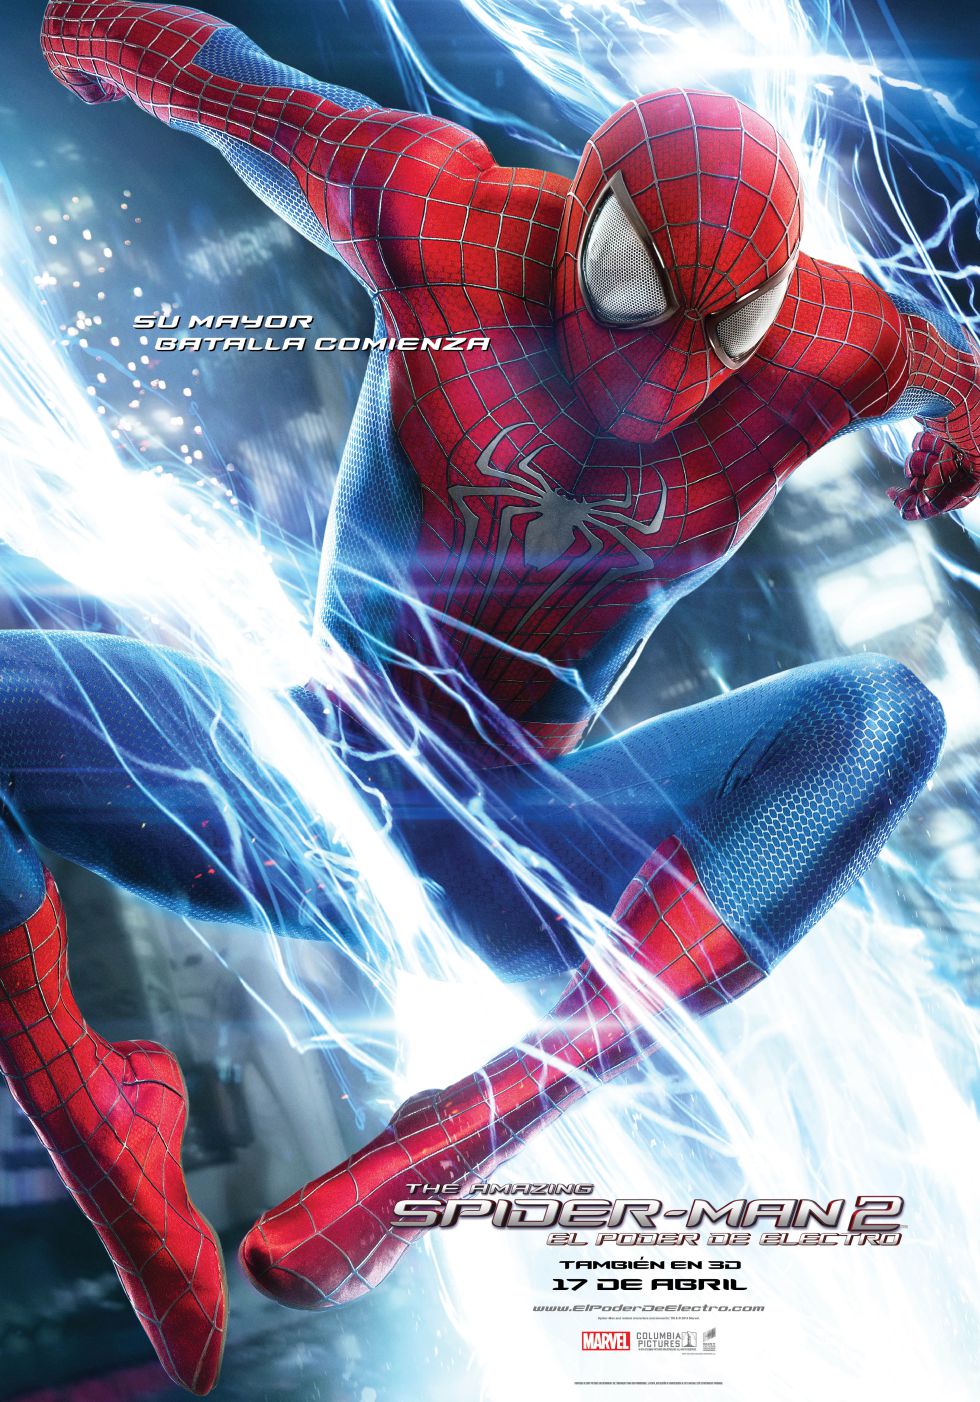 Spider-Man2 y el poder de Electro 